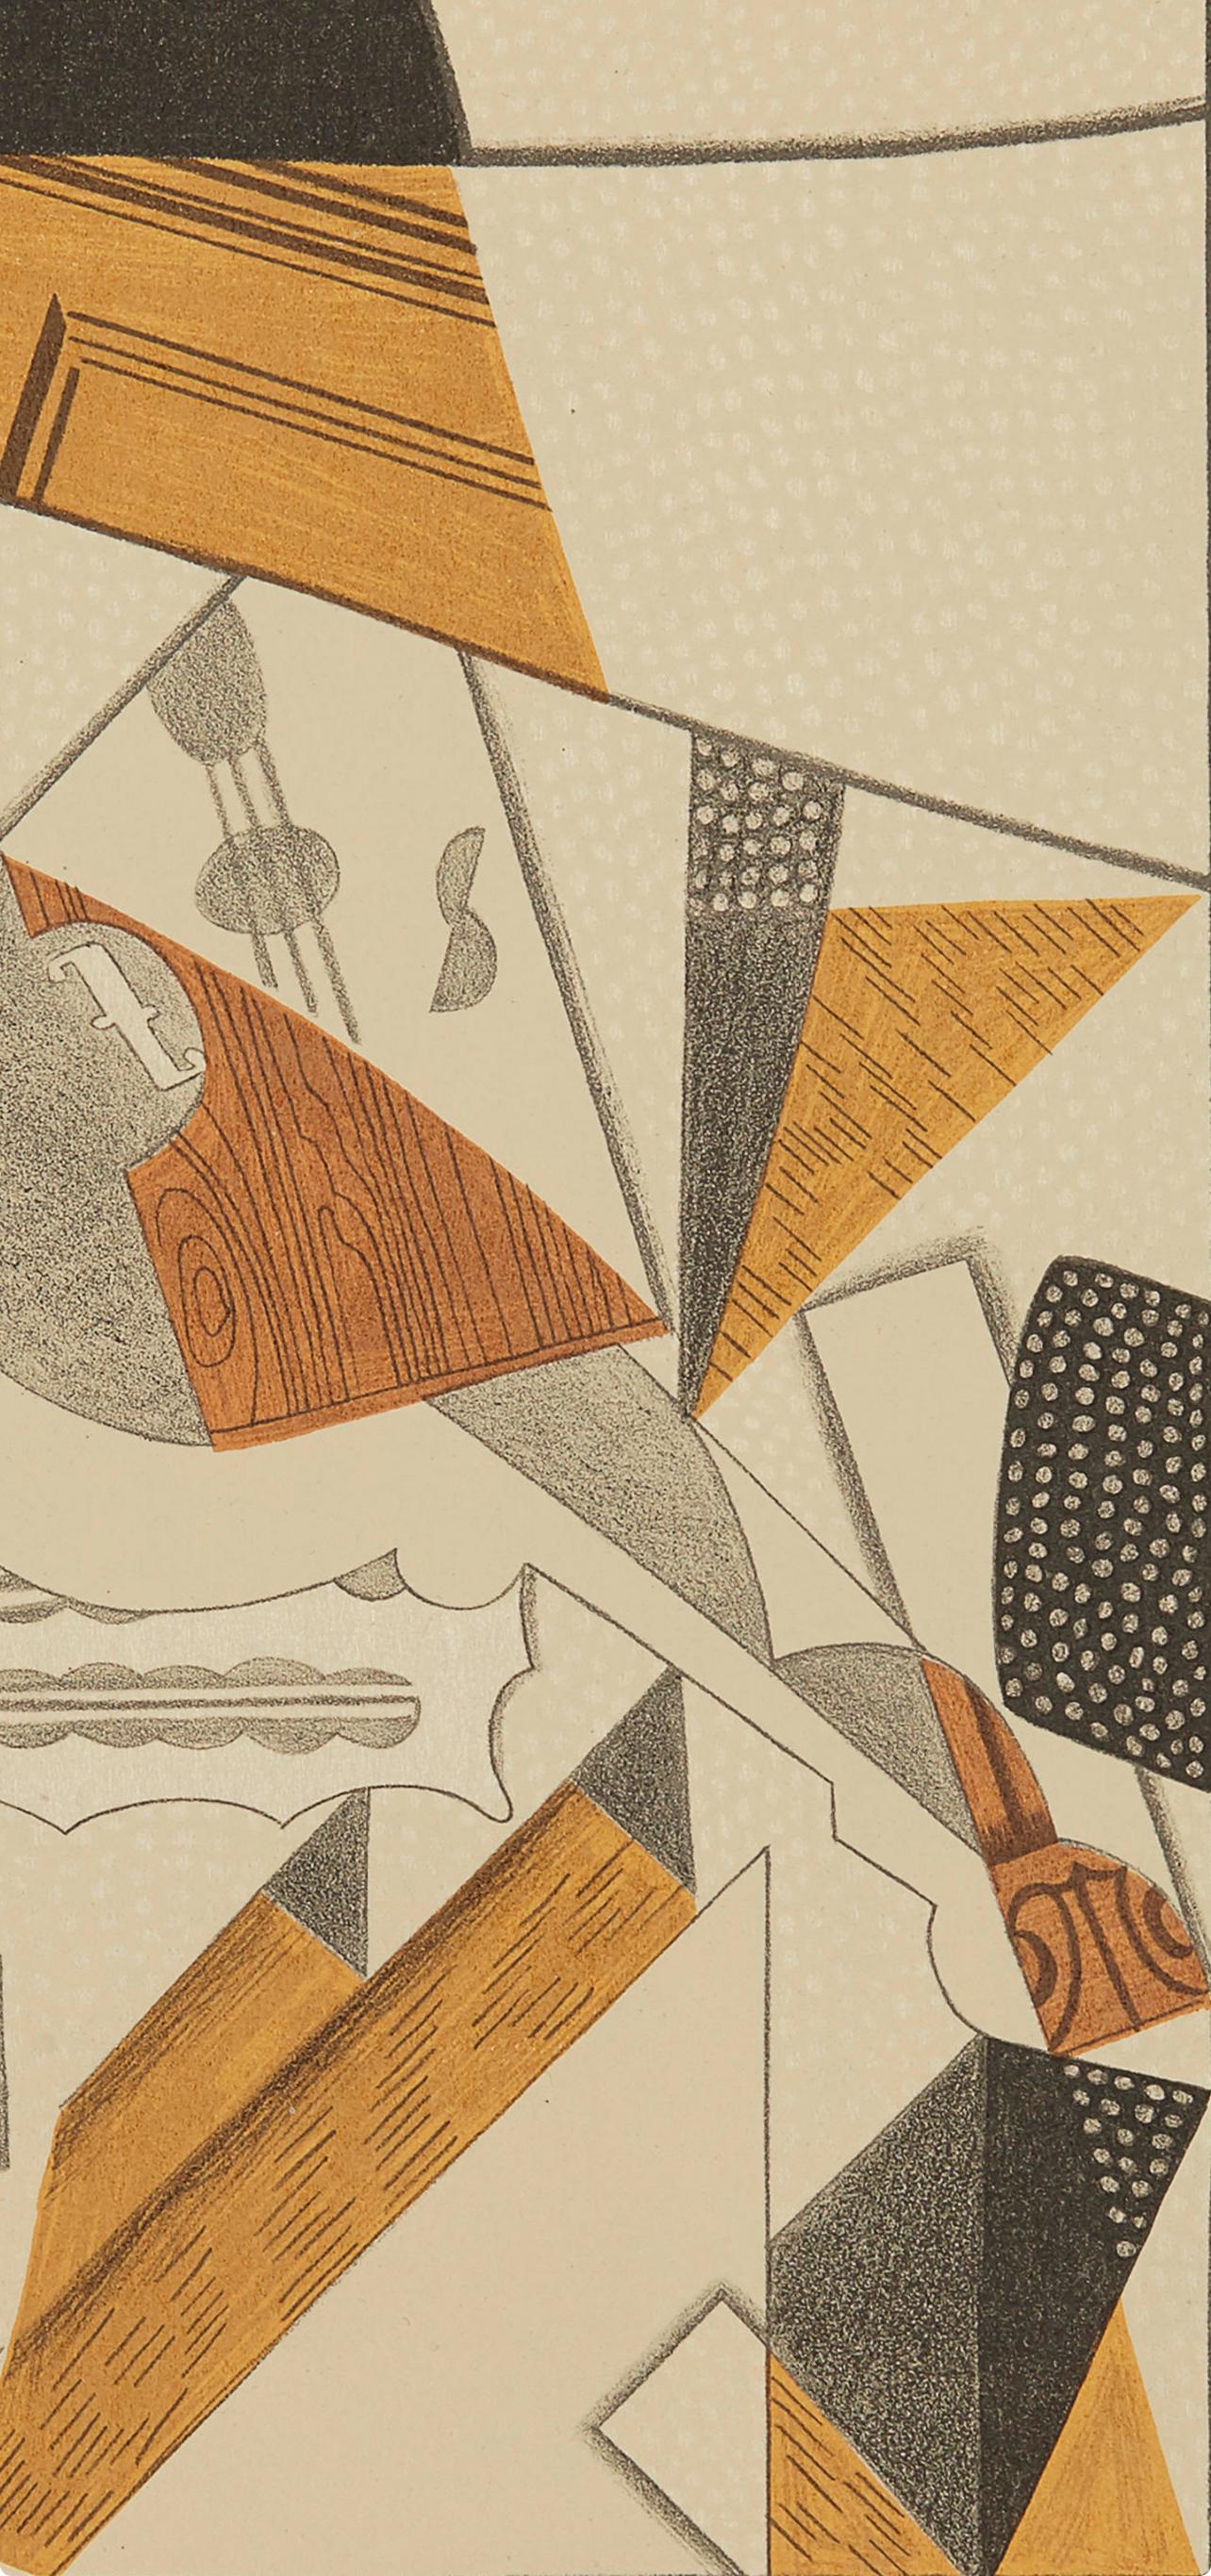 Gris, Violon (Kahnweiler 1969), Au Soleil du Plafond (after) - Print by Juan Gris